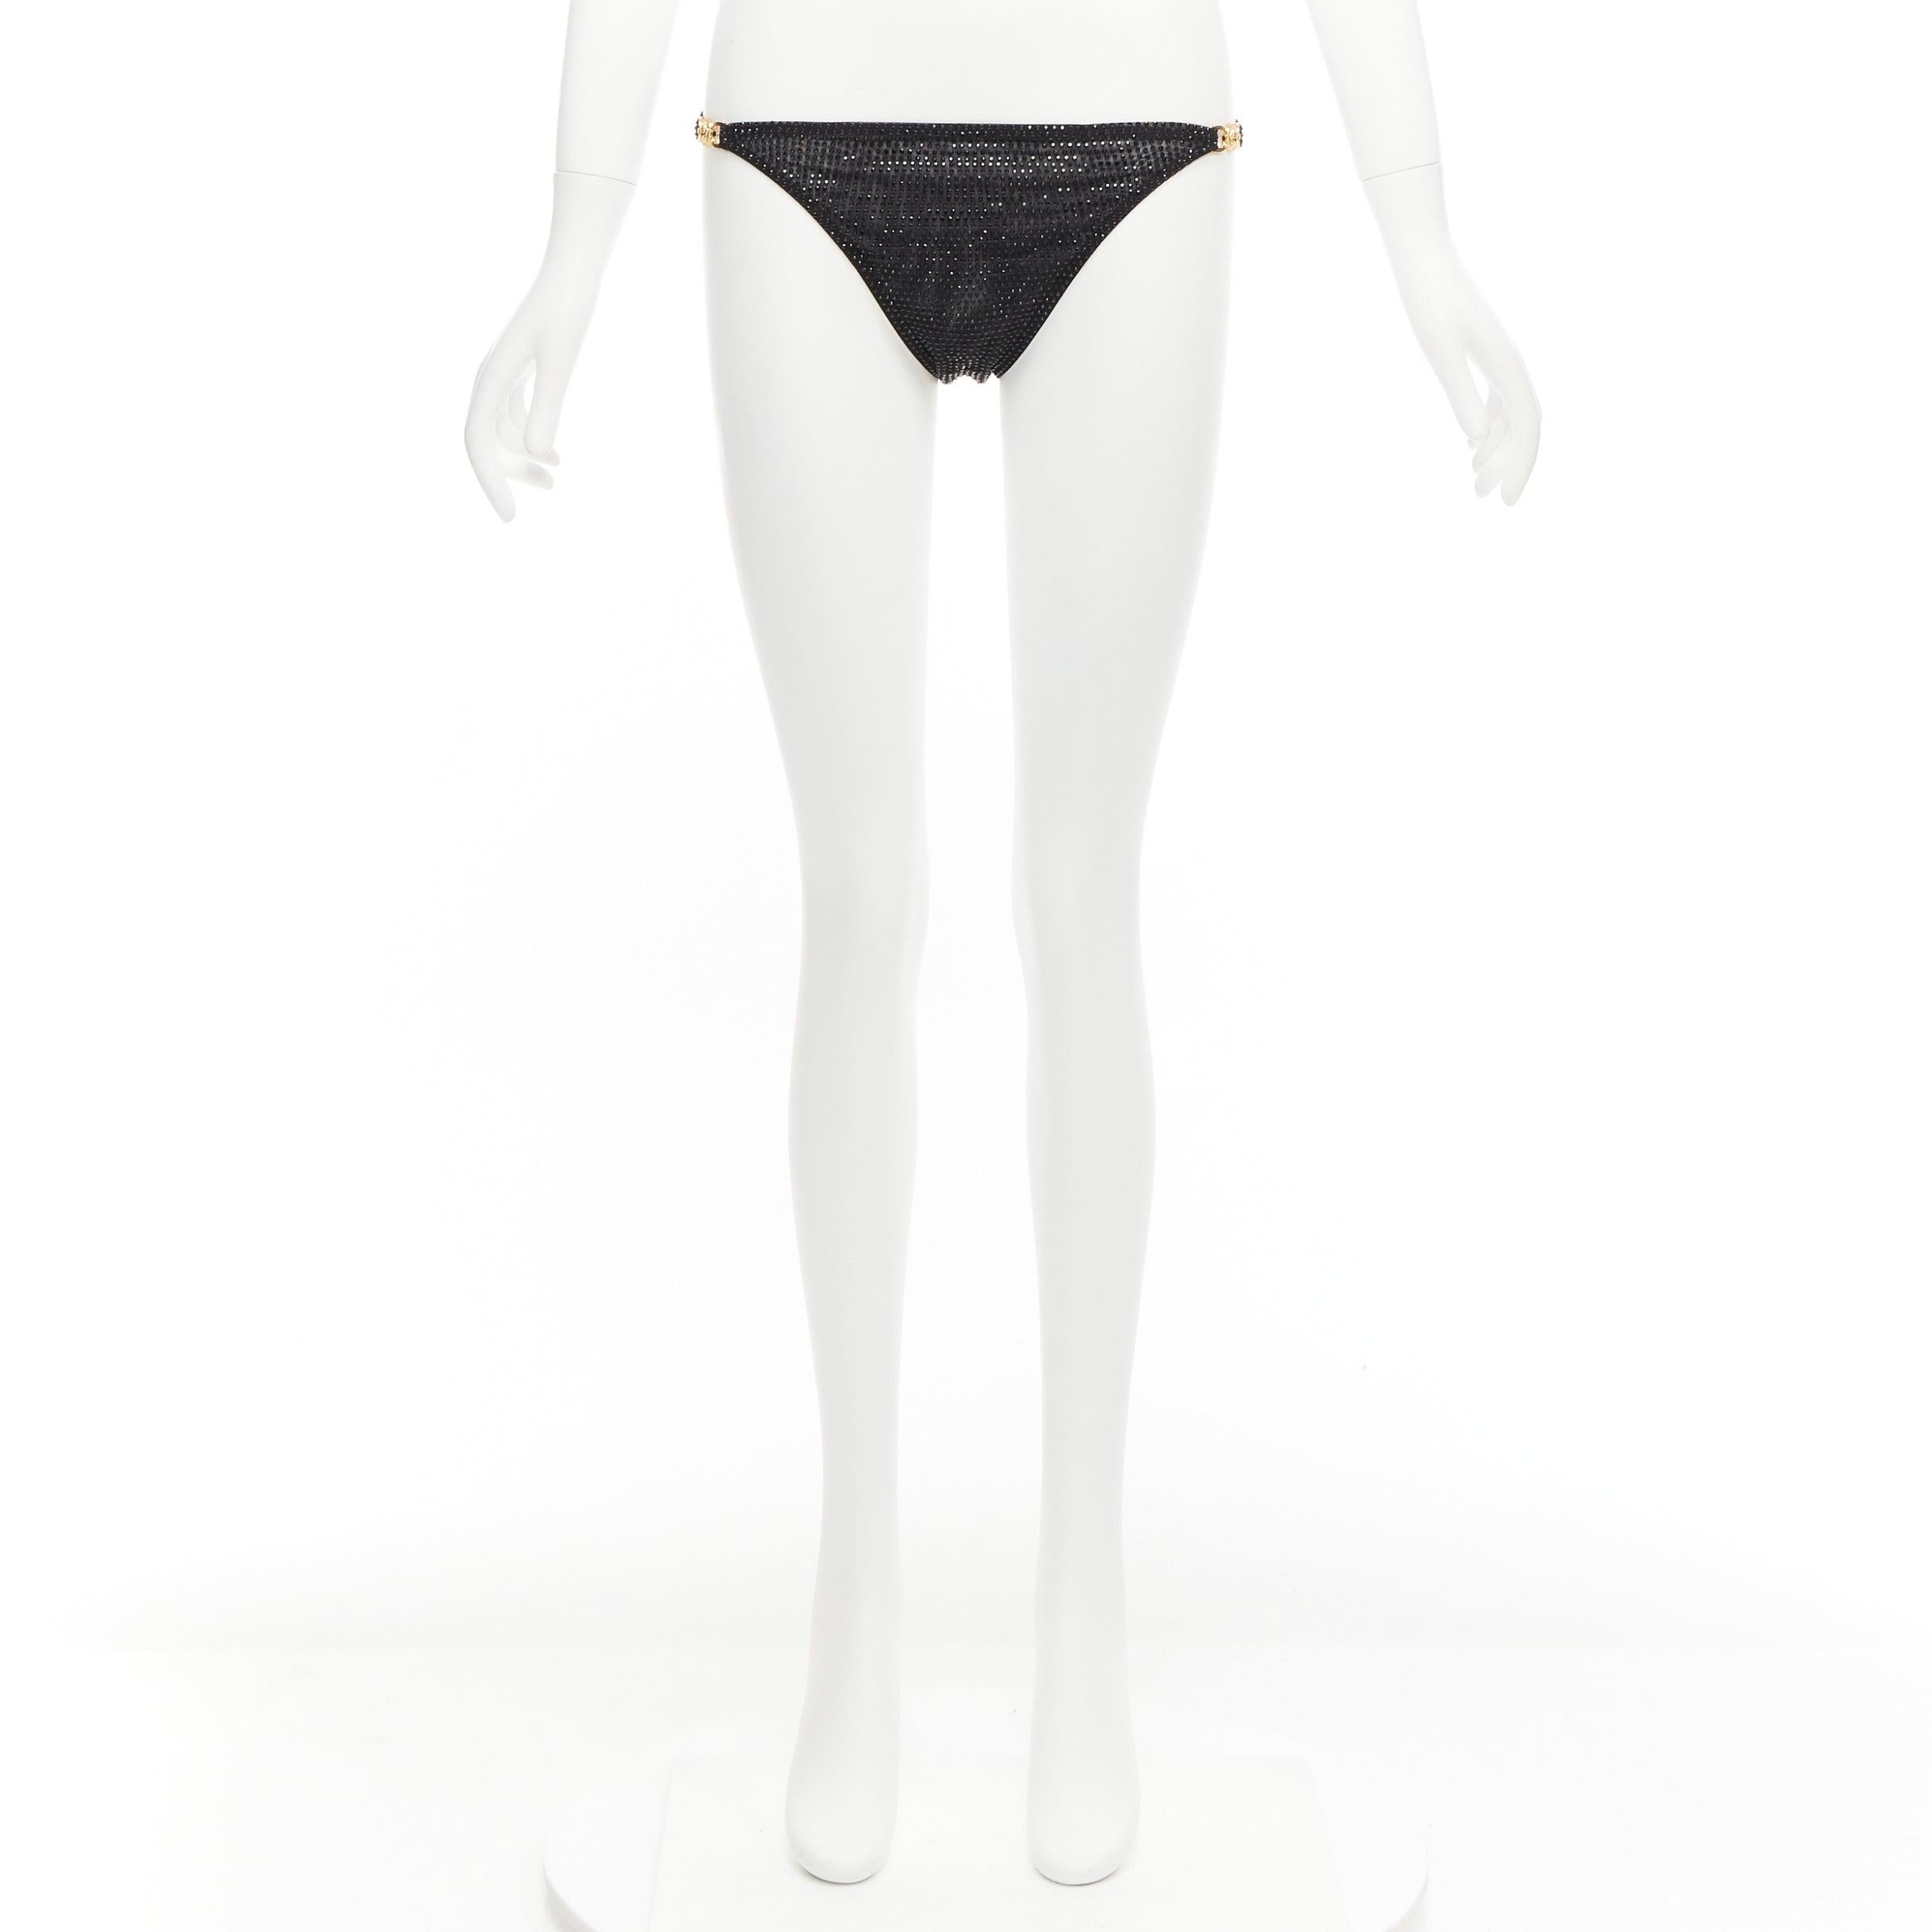 VERSACE 2019 black crystal embellished gold Medusa sheer bikini bottom Sz.1 S For Sale 4